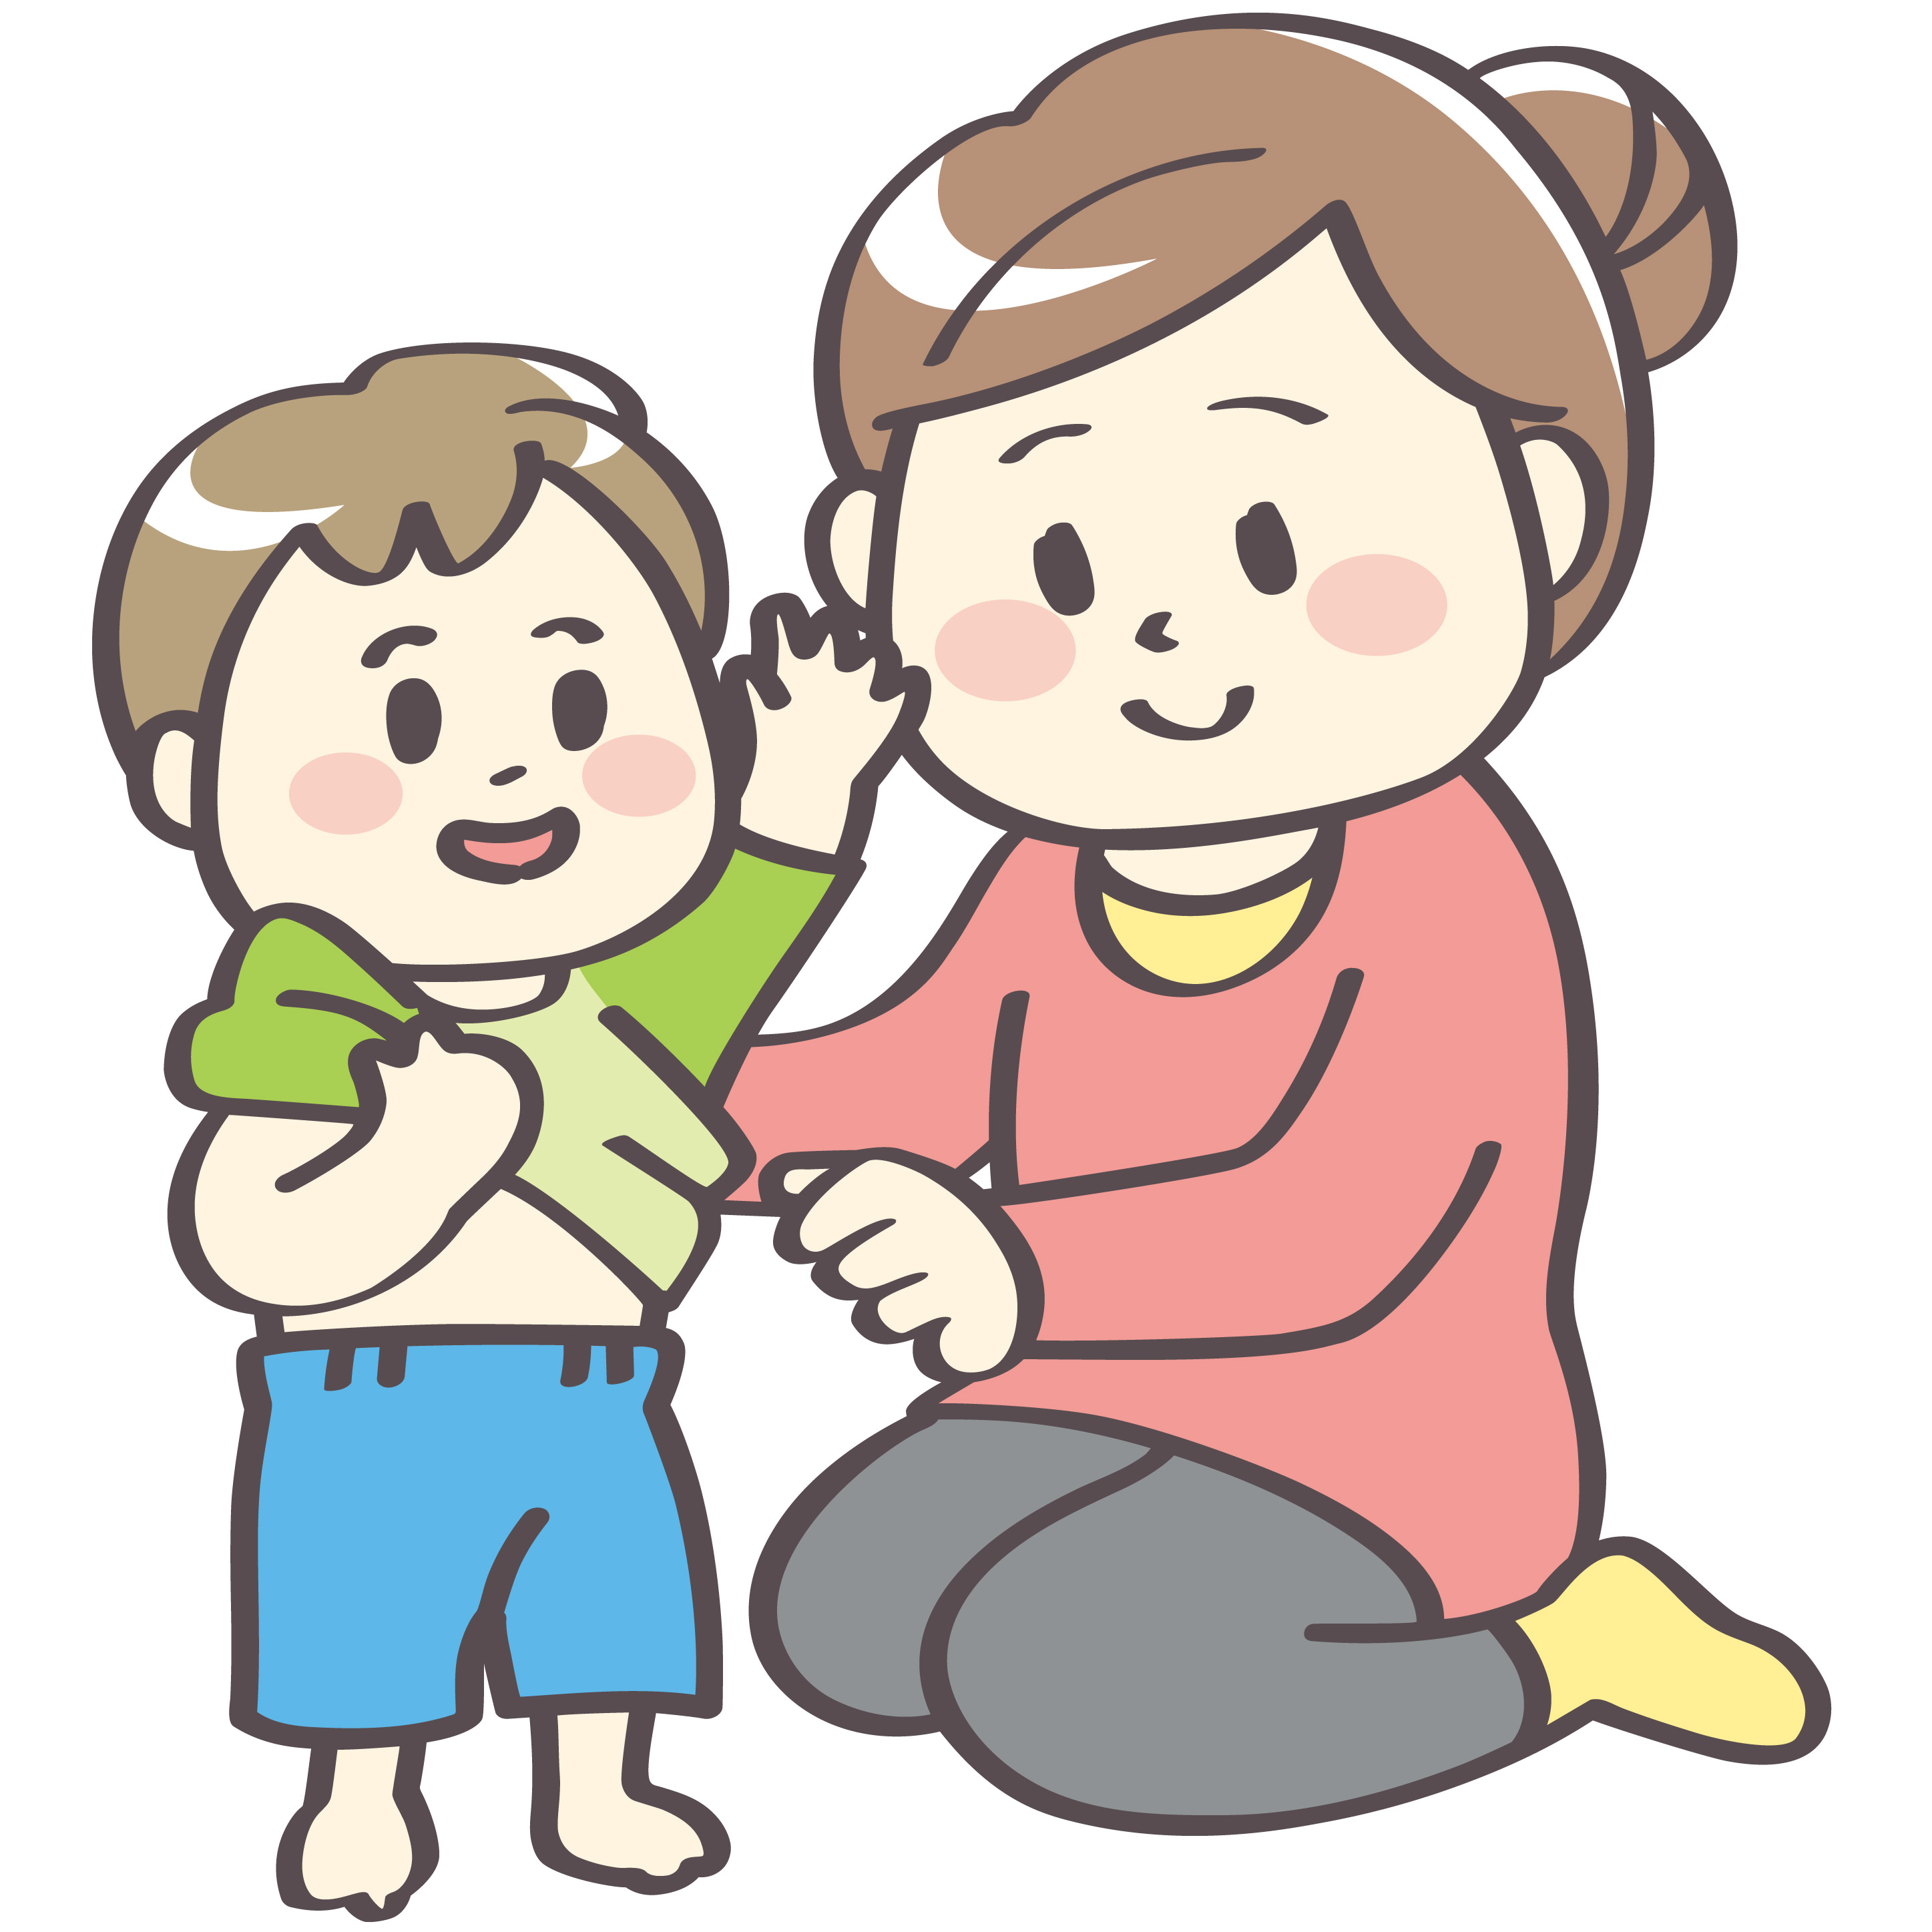 4月23日 ユニクロで可愛すぎる Eテレキッズキャラクター のドライパジャマが販売 先着ノベルティプレゼントもあり 滋賀のママがイベント 育児 遊び 学びを発信 シガマンマ ピースマム